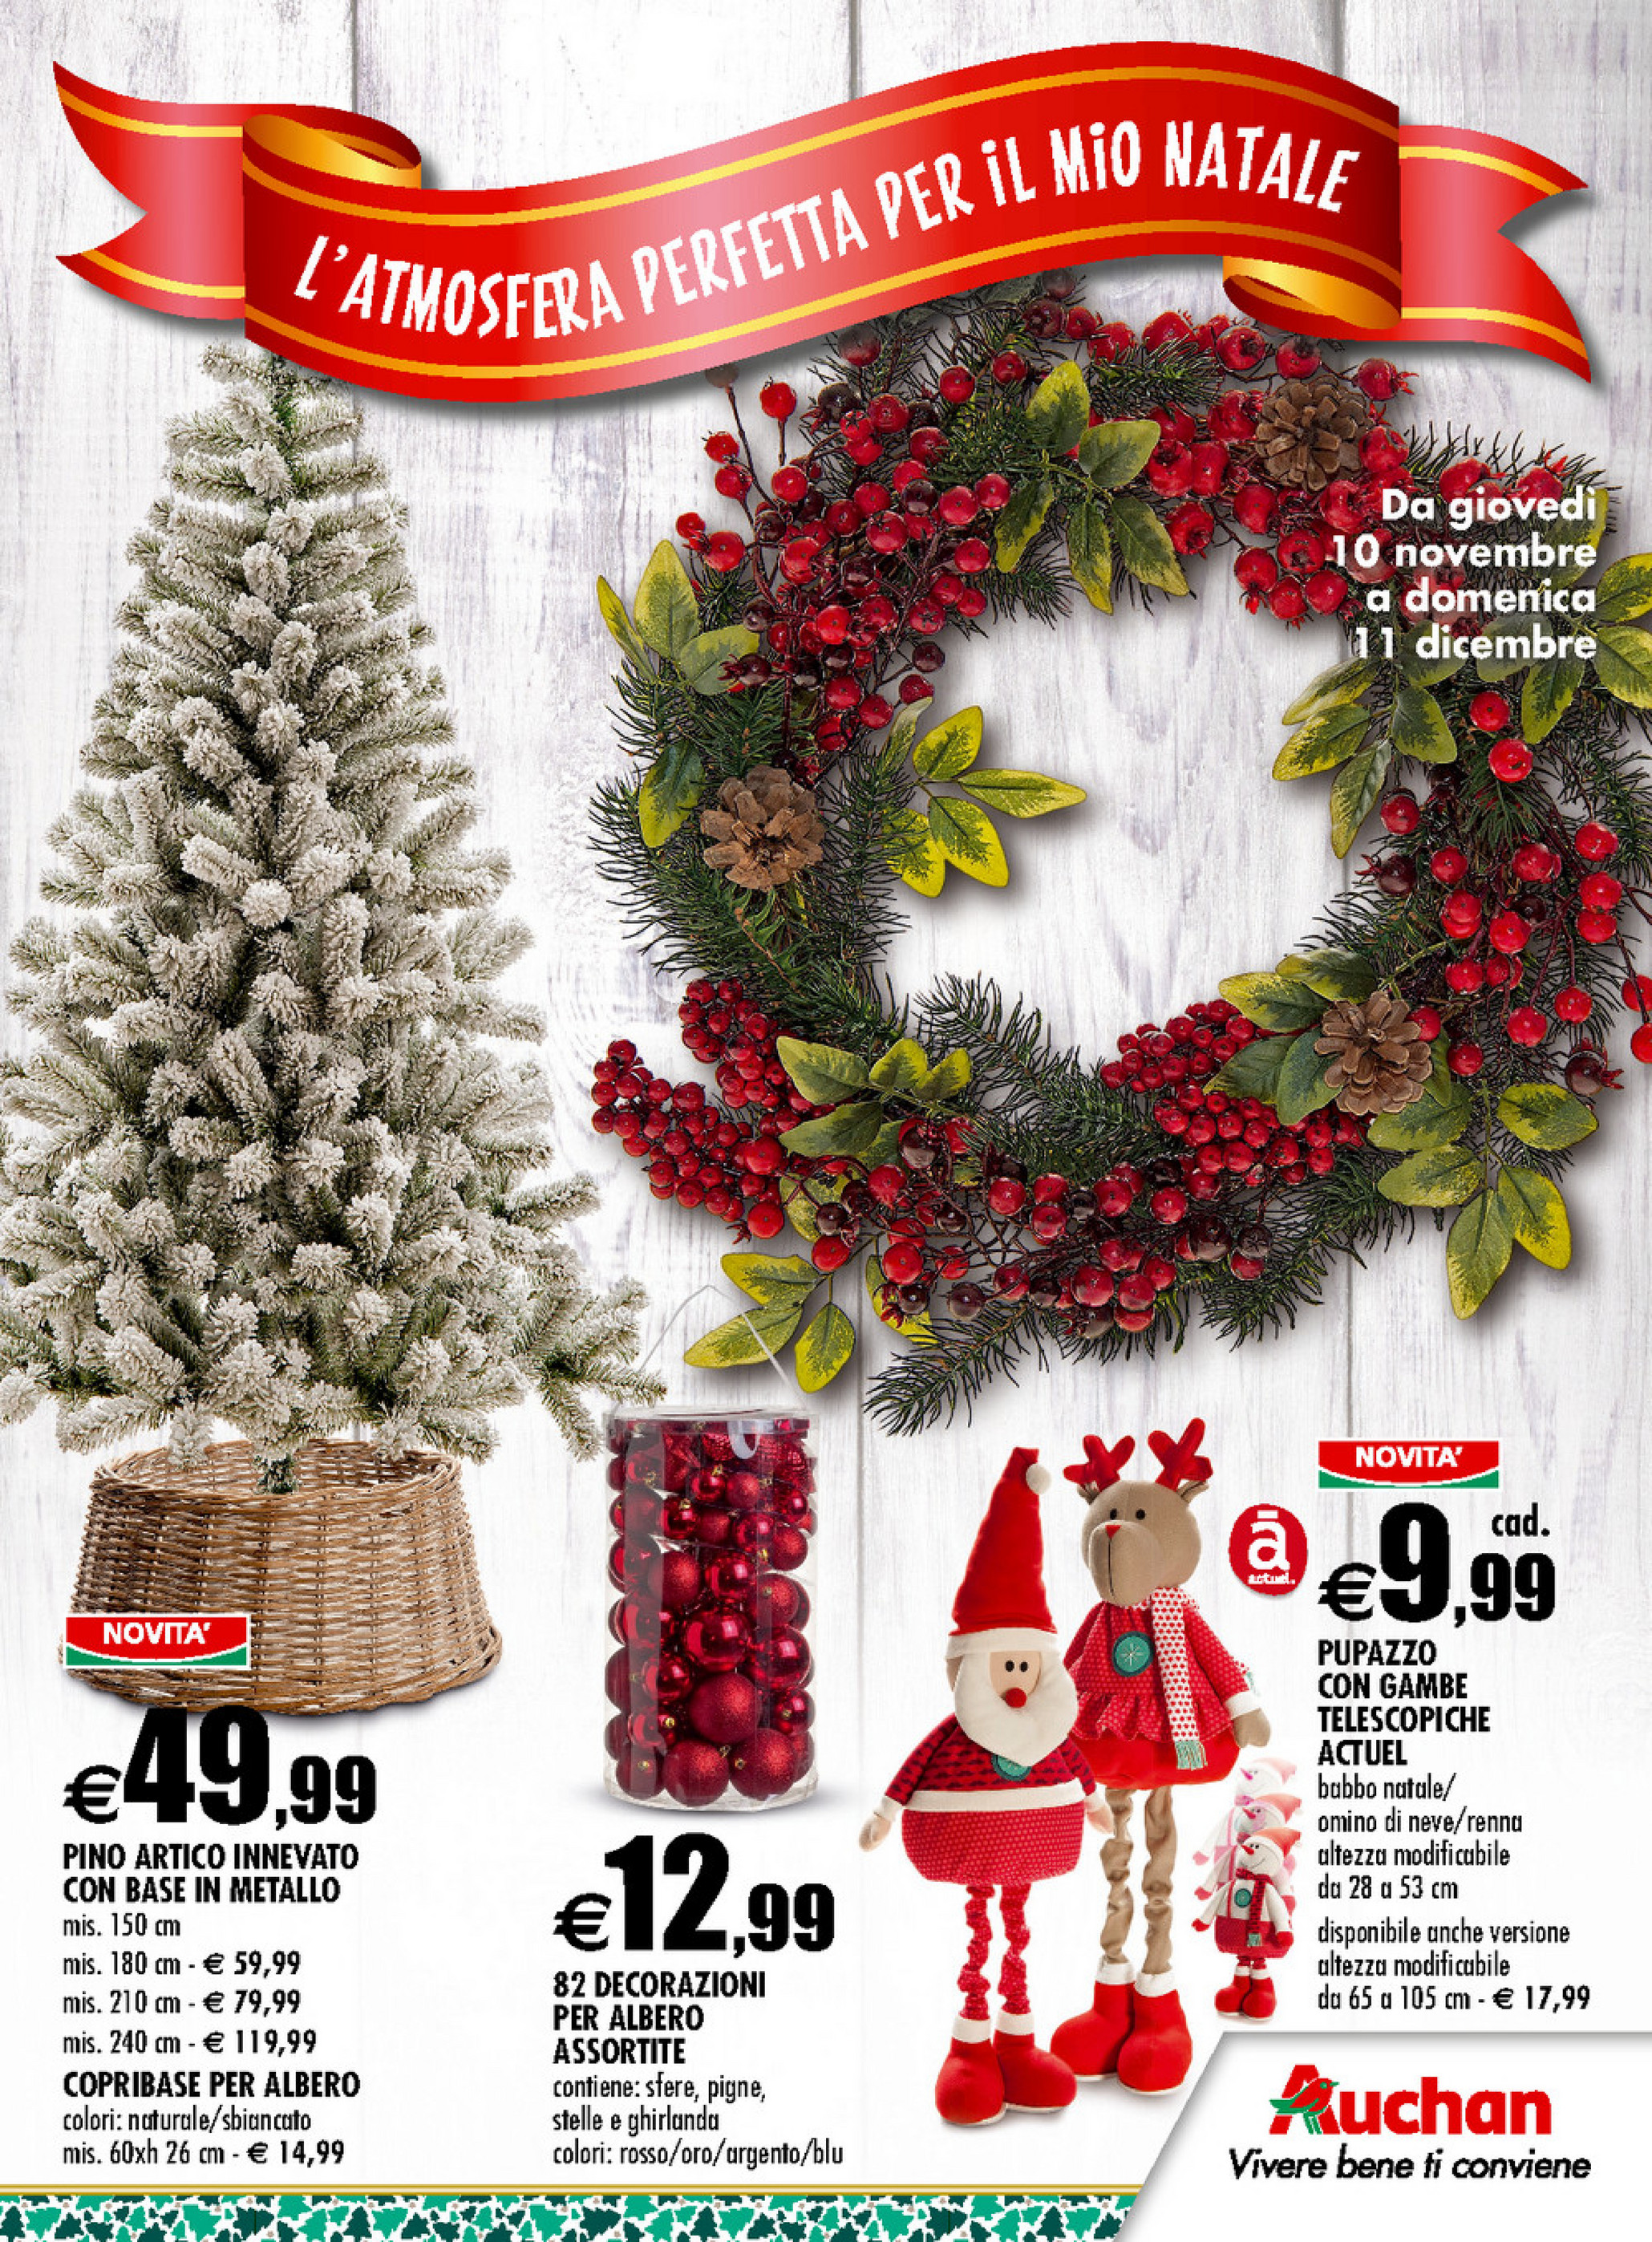 Auchan Decorazioni Natalizie.Sp Volantino Auchan L Atmosfera Perfetta Per Il Mio Natale Page 1 Created With Publitas Com